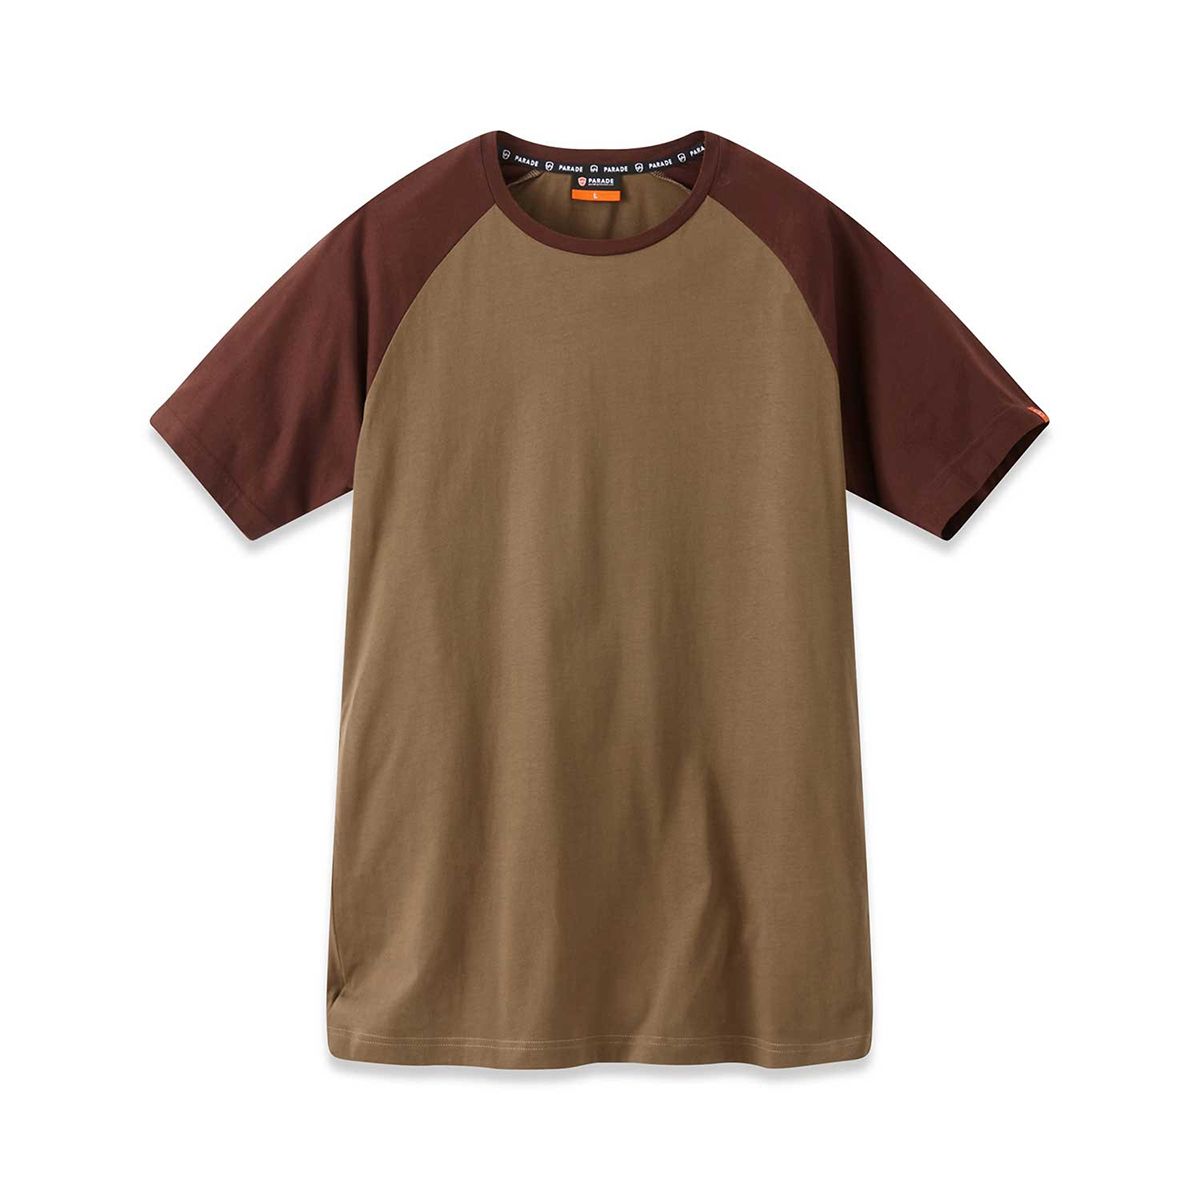 Parade Khaki Cotton Short Sleeve T-Shirt, UK- XXXL, EUR- XXXL